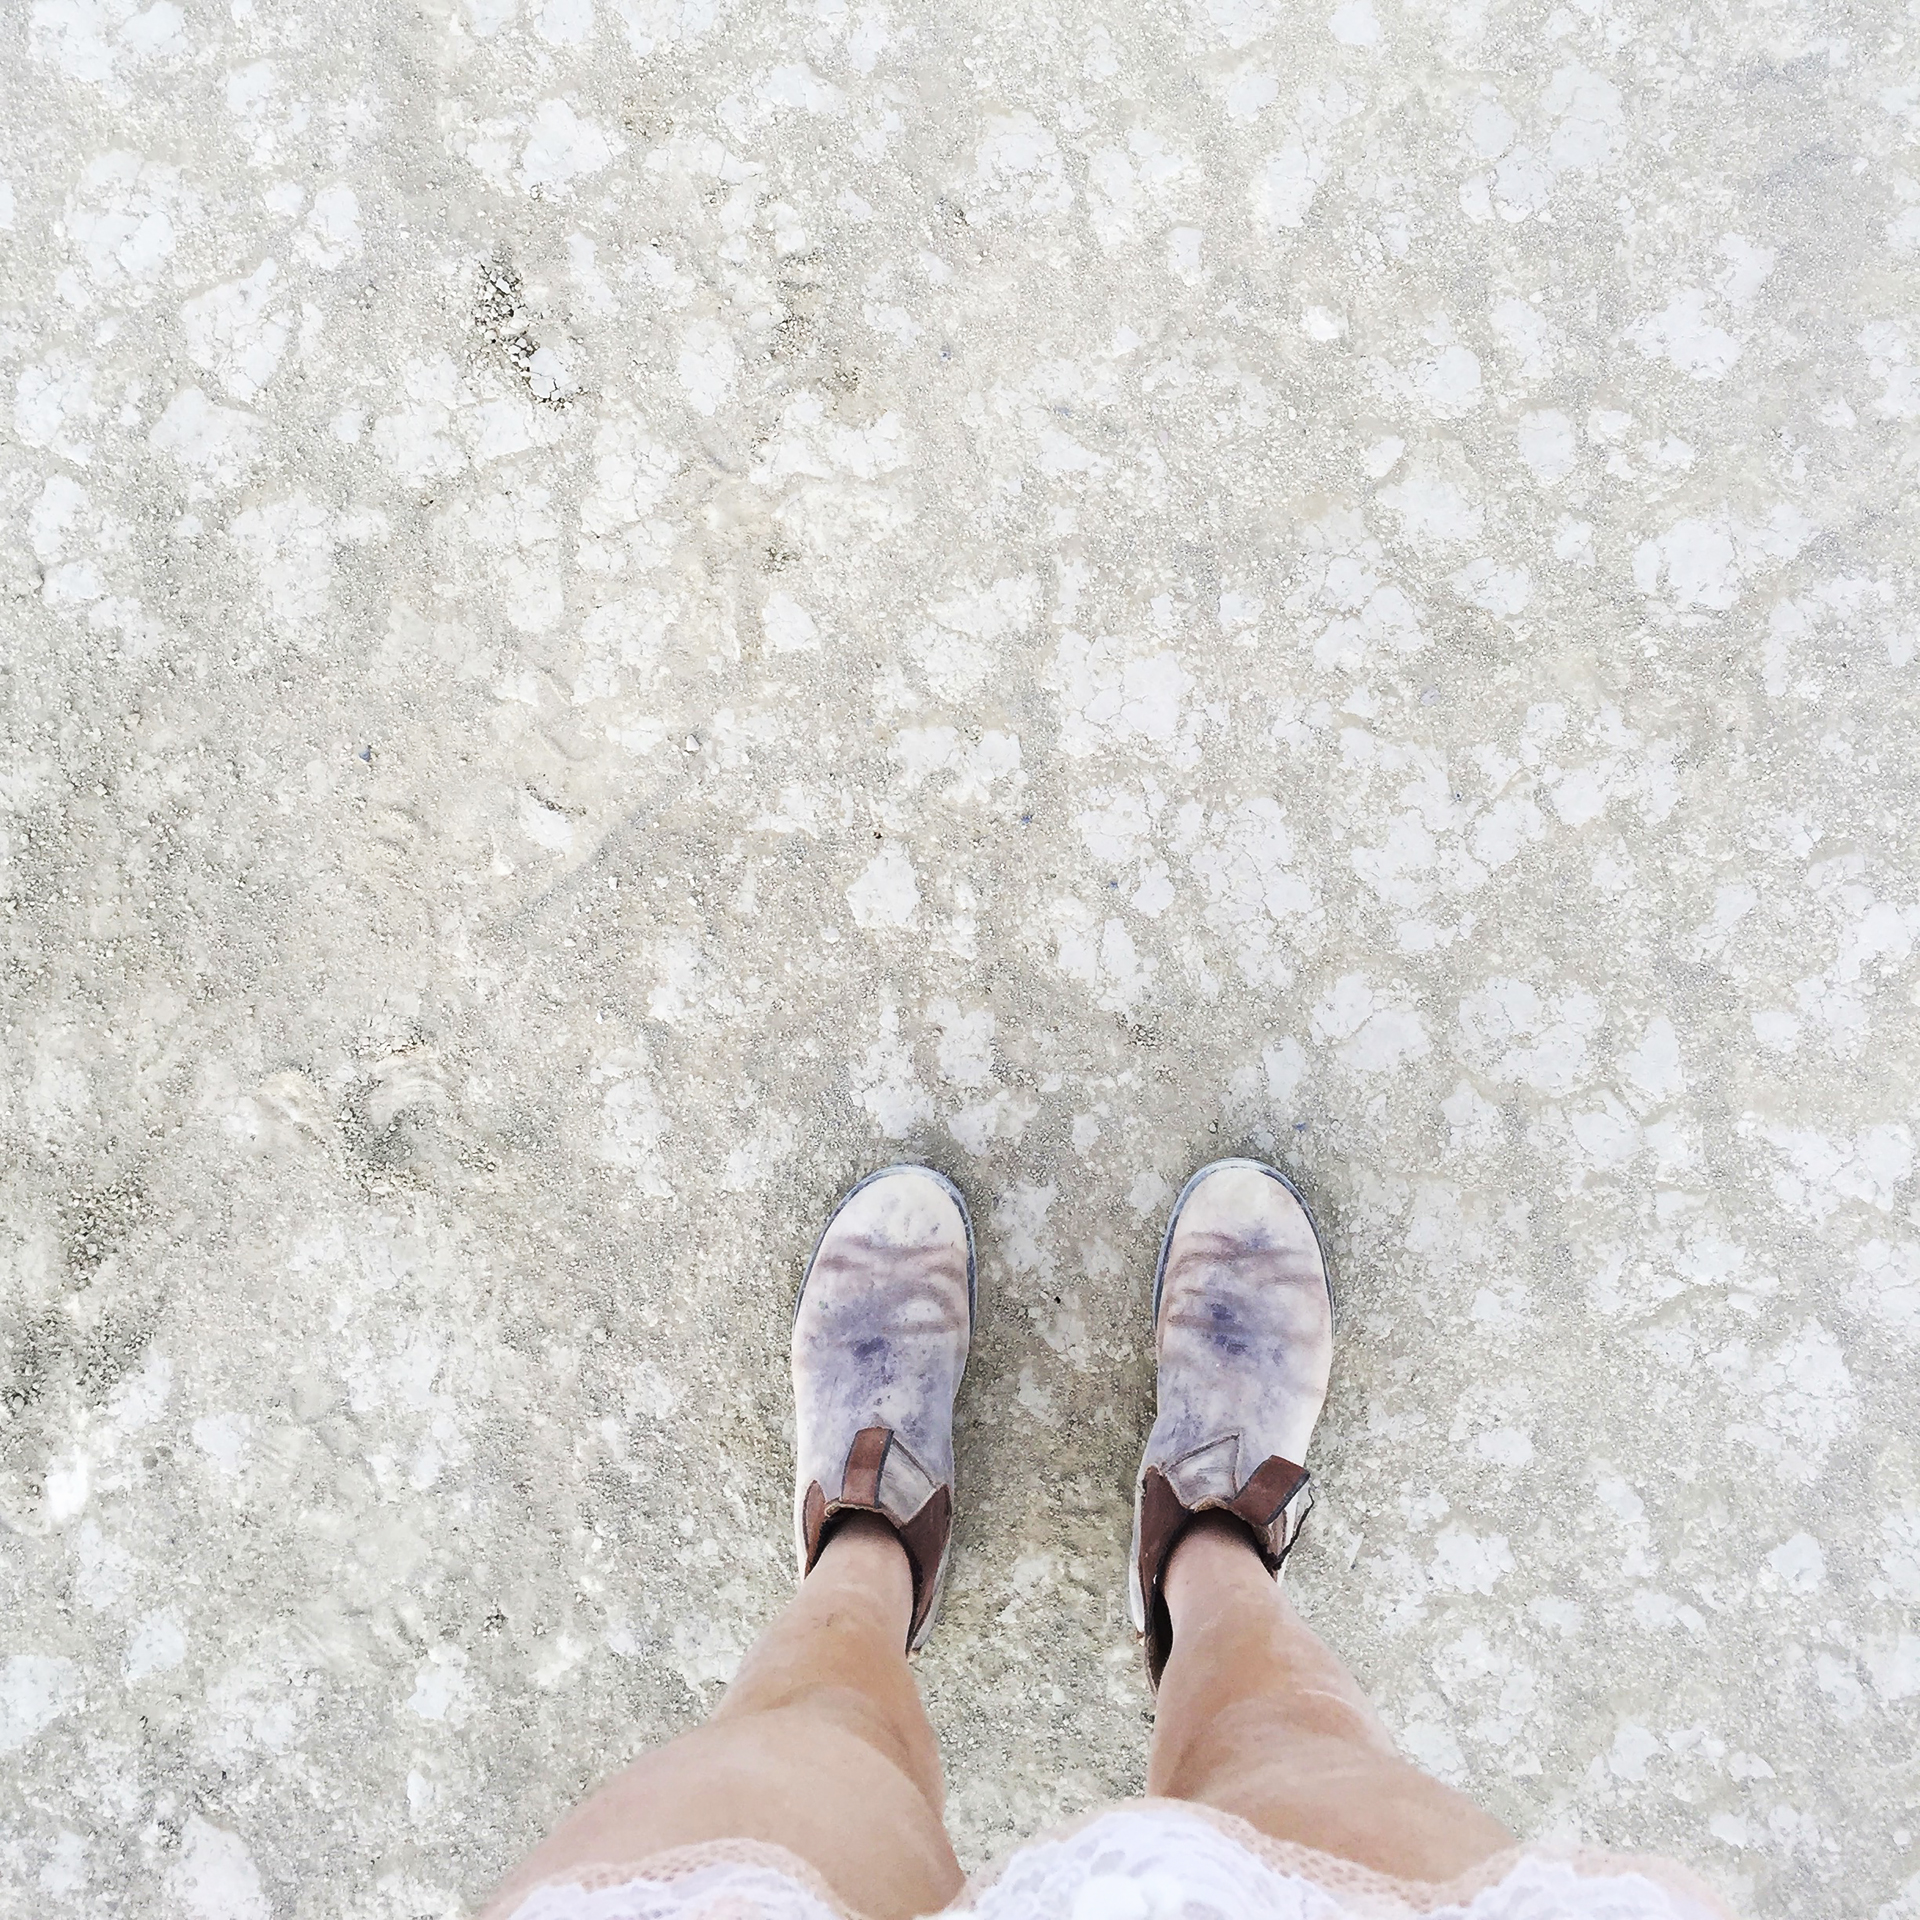 Dusty feet on the playa.